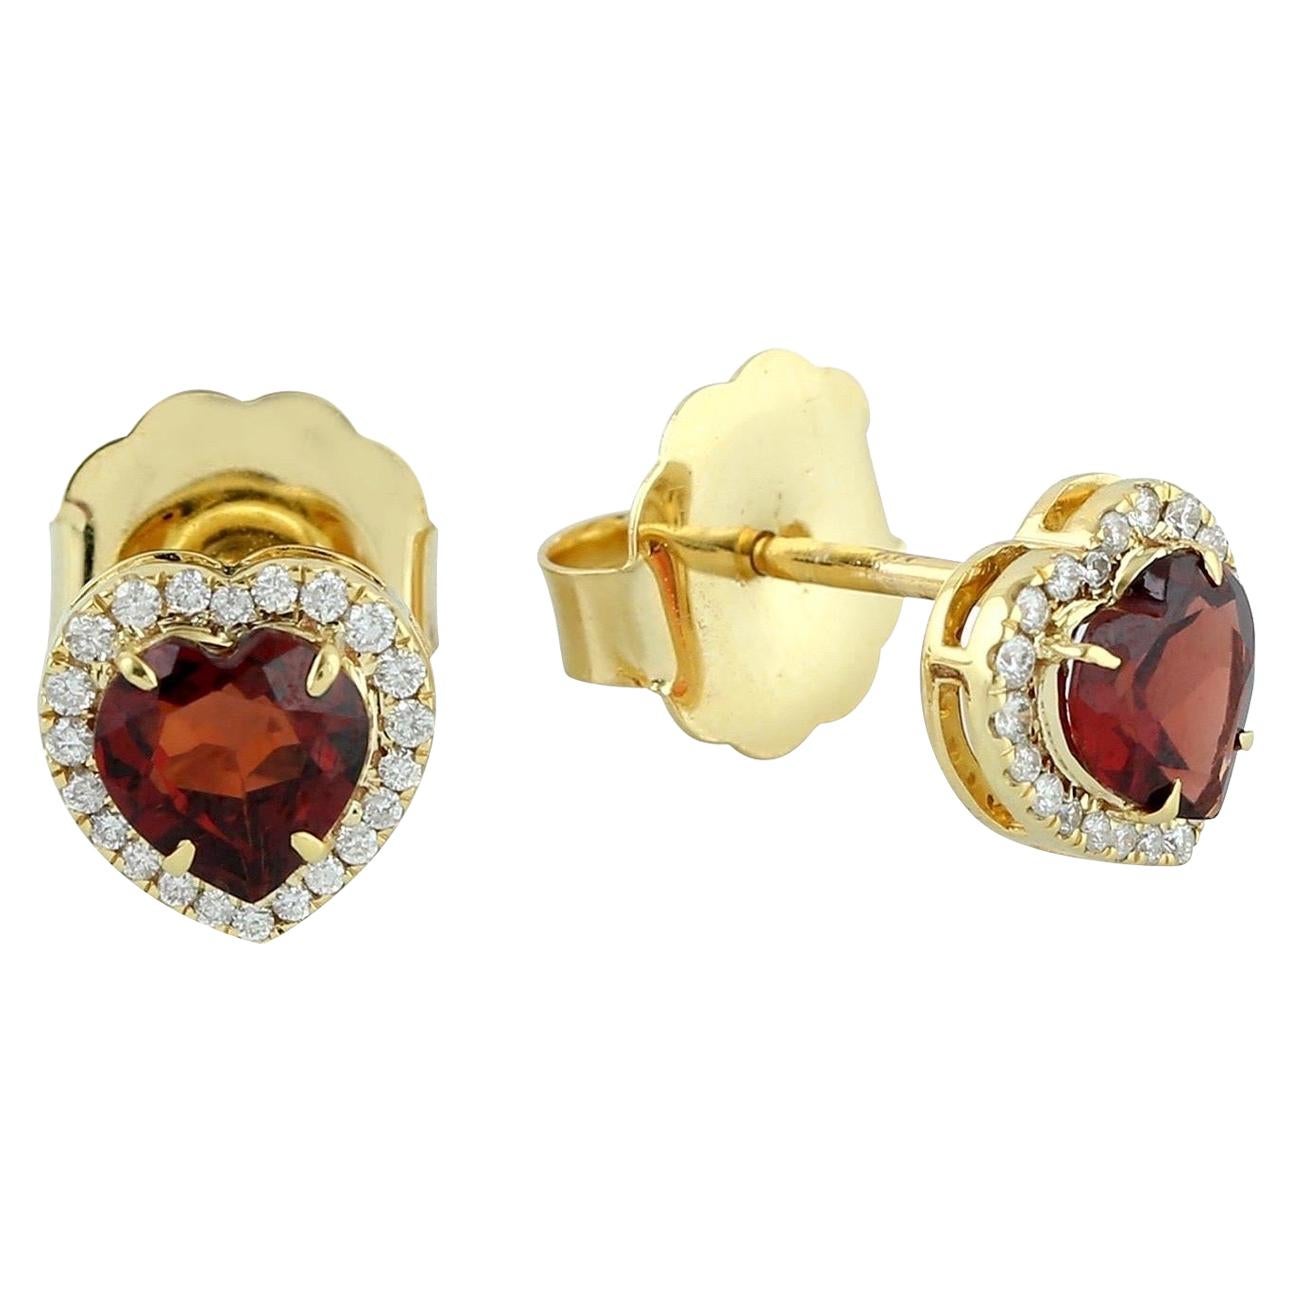 Garnet Diamond 14 Karat Gold Heart Stud Earrings